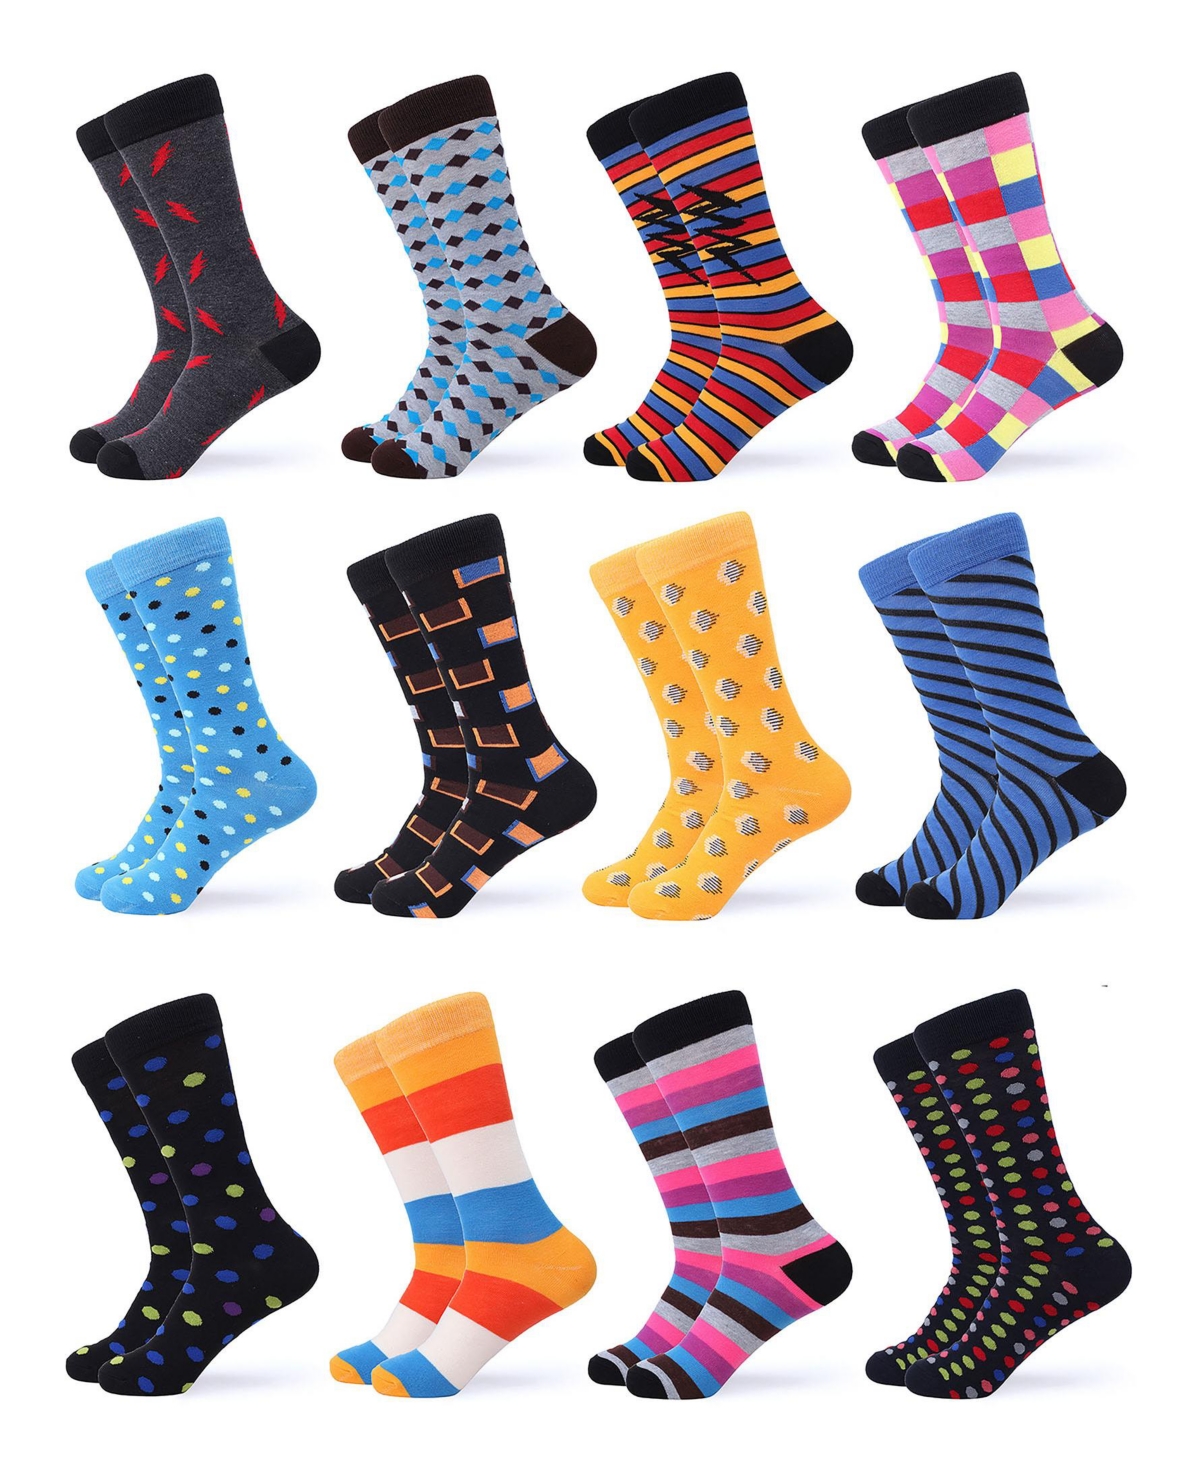 Men's Swish Colorful Dress Socks 12 Pack - Funky colors